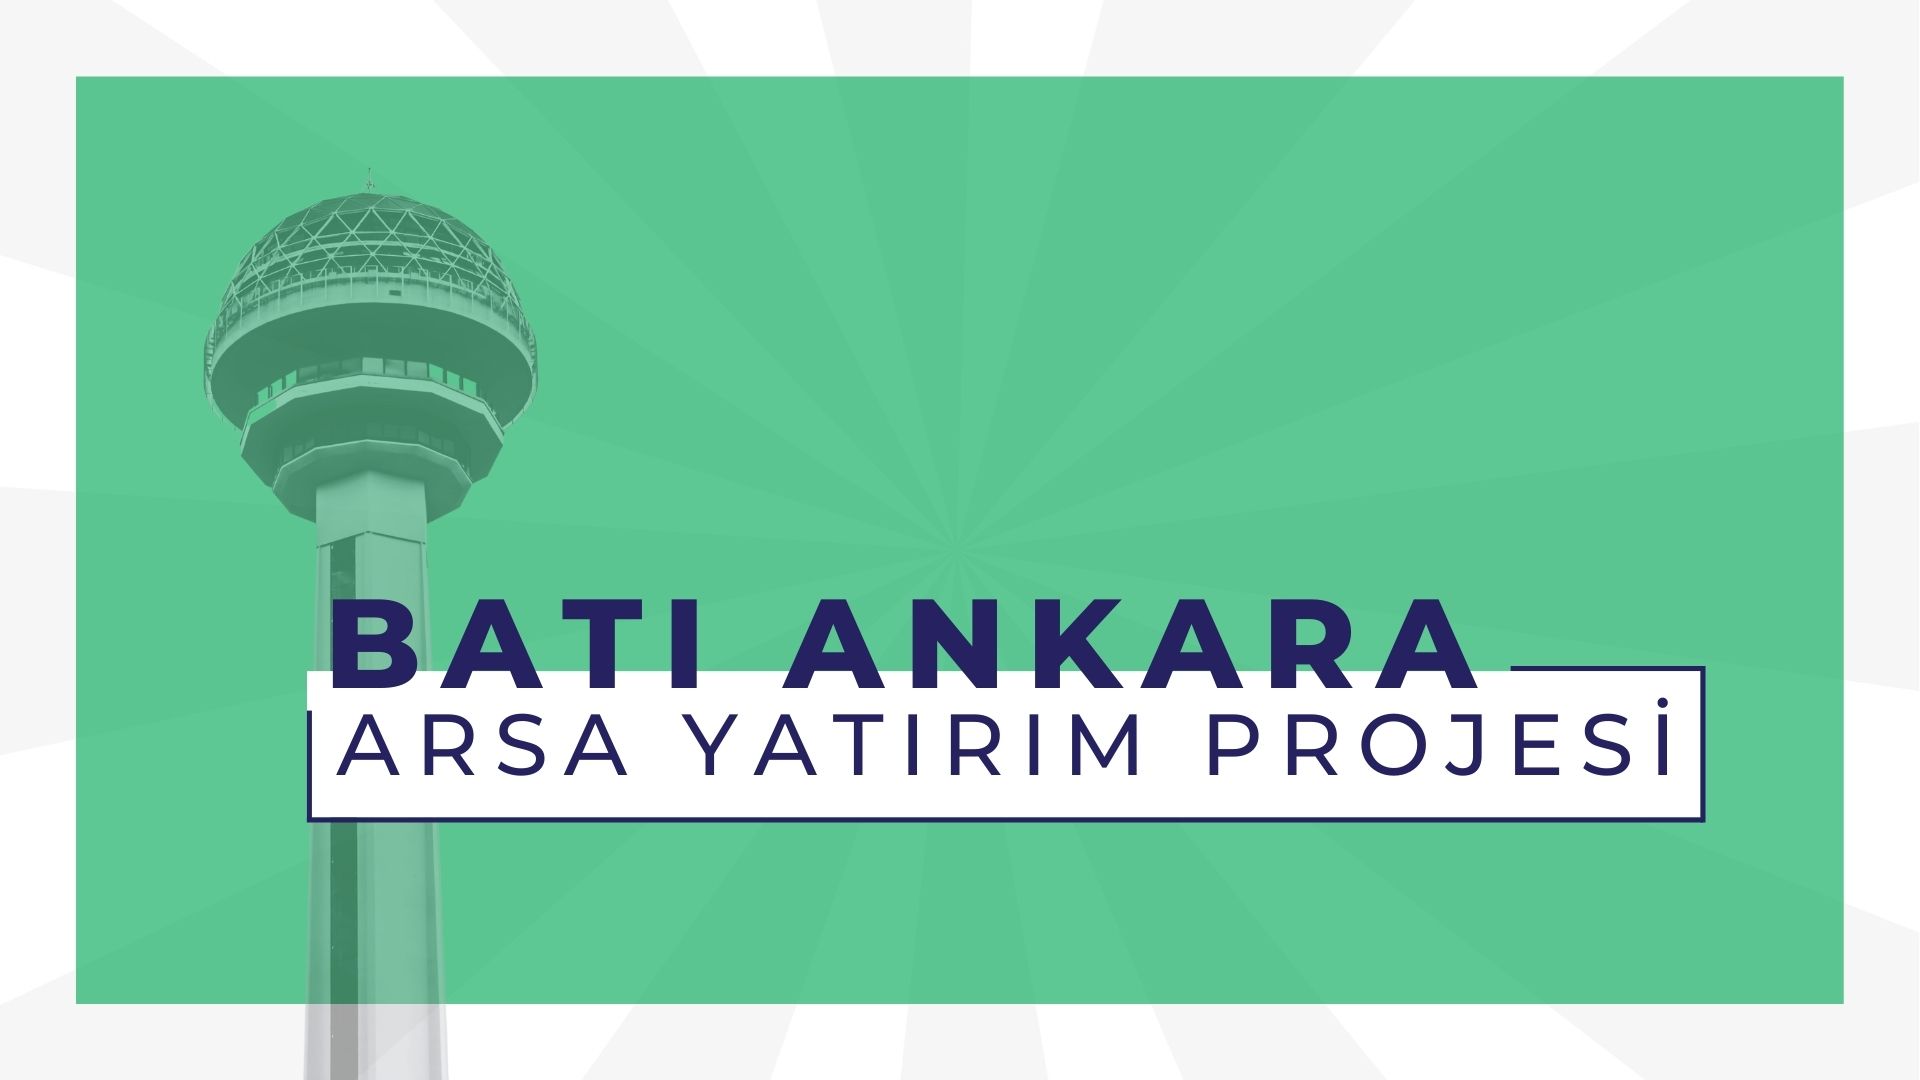 Batı Ankara Arsa Yatırım Projesi